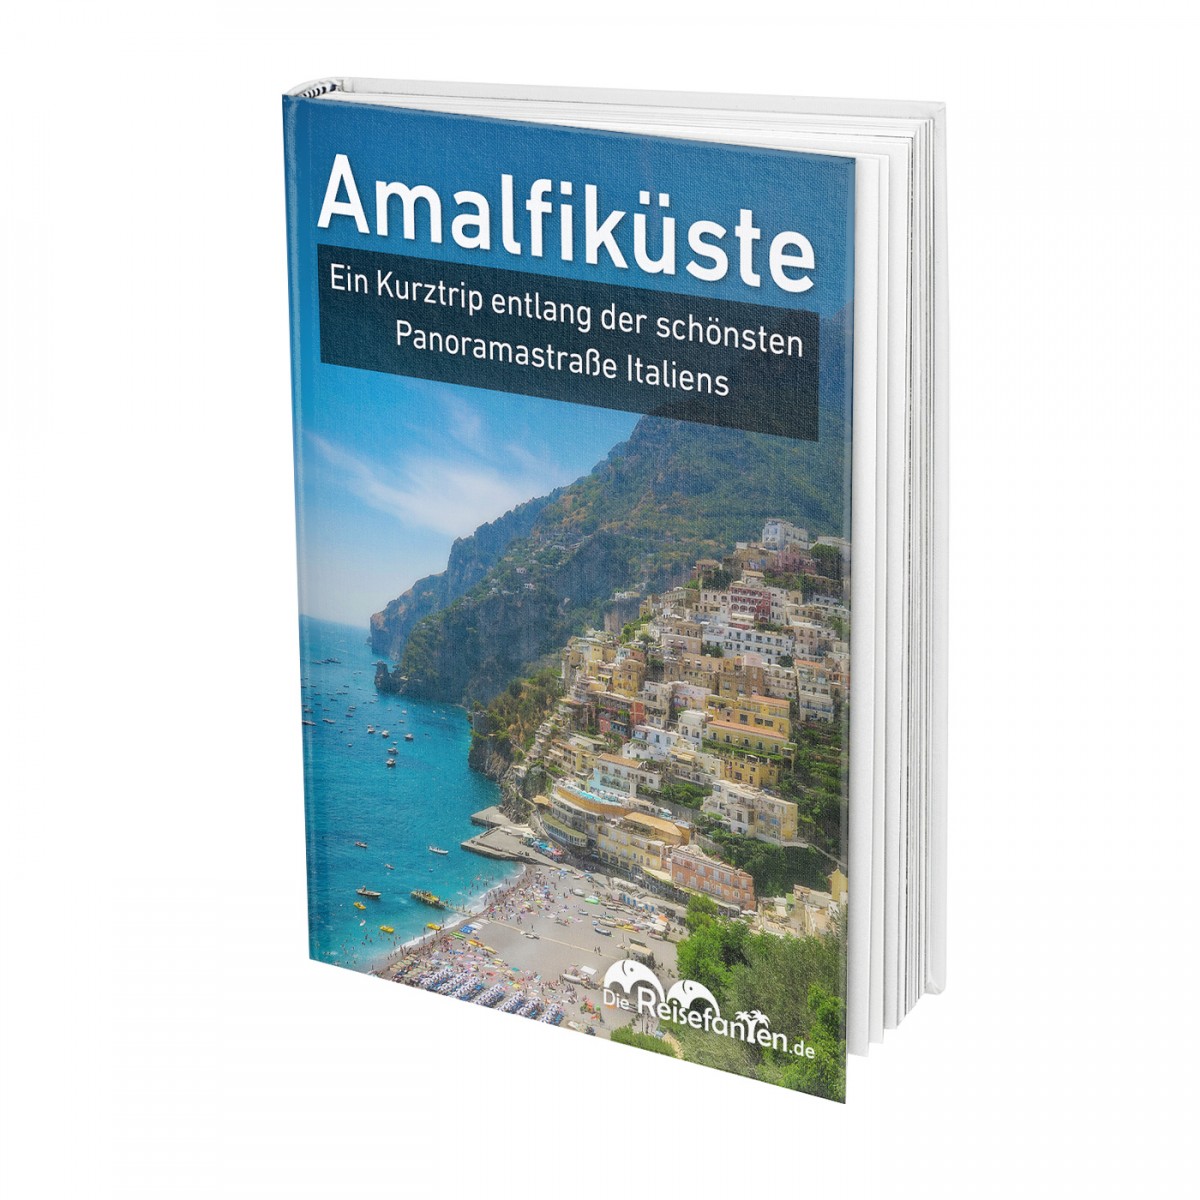 Das siebte eBook der Reisefanten zur Amalfiküste